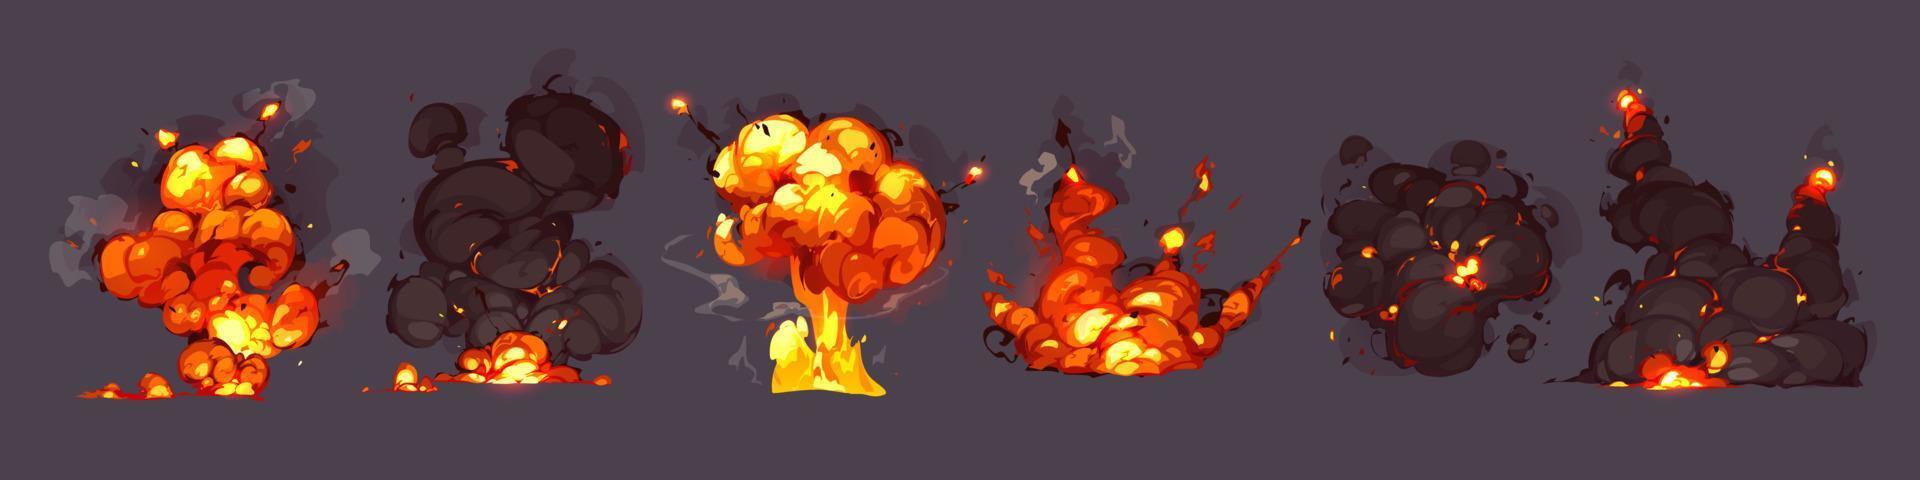 explosions de bombes, explosions avec des nuages de feu et de fumée vecteur